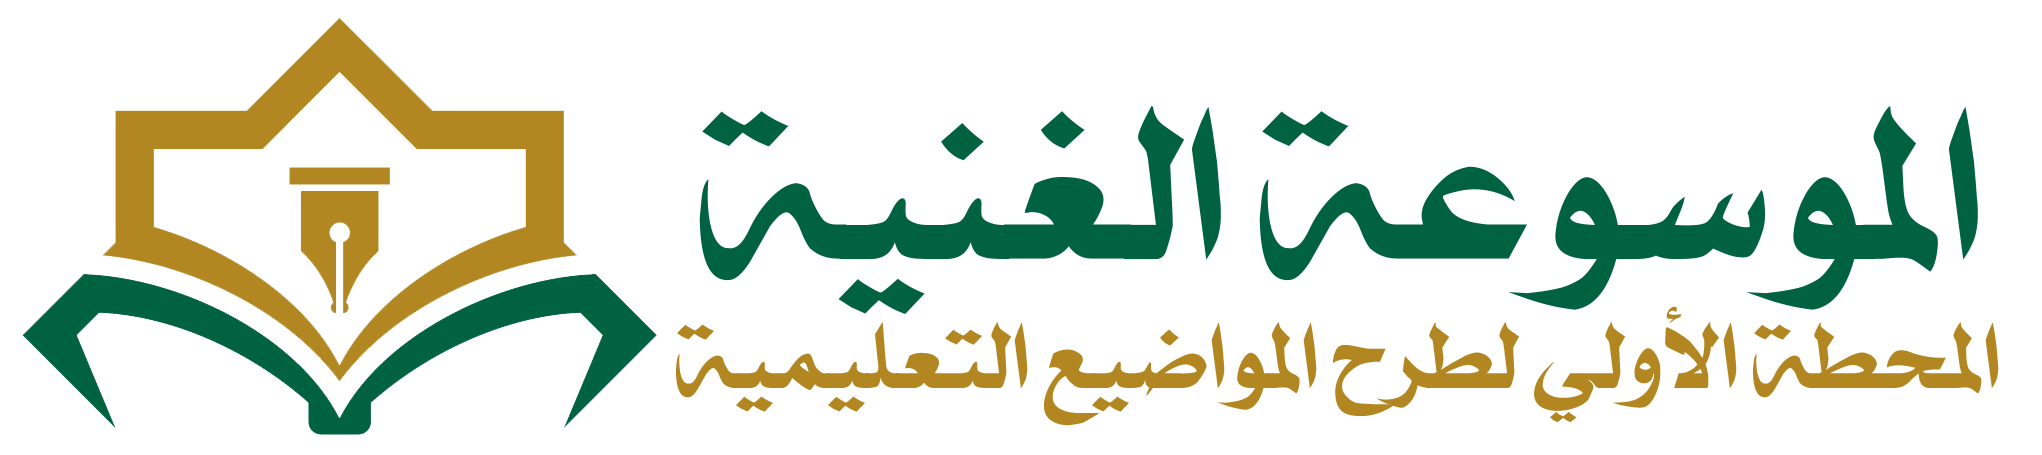 الموسوعة الغنية - almawsueuh alghania